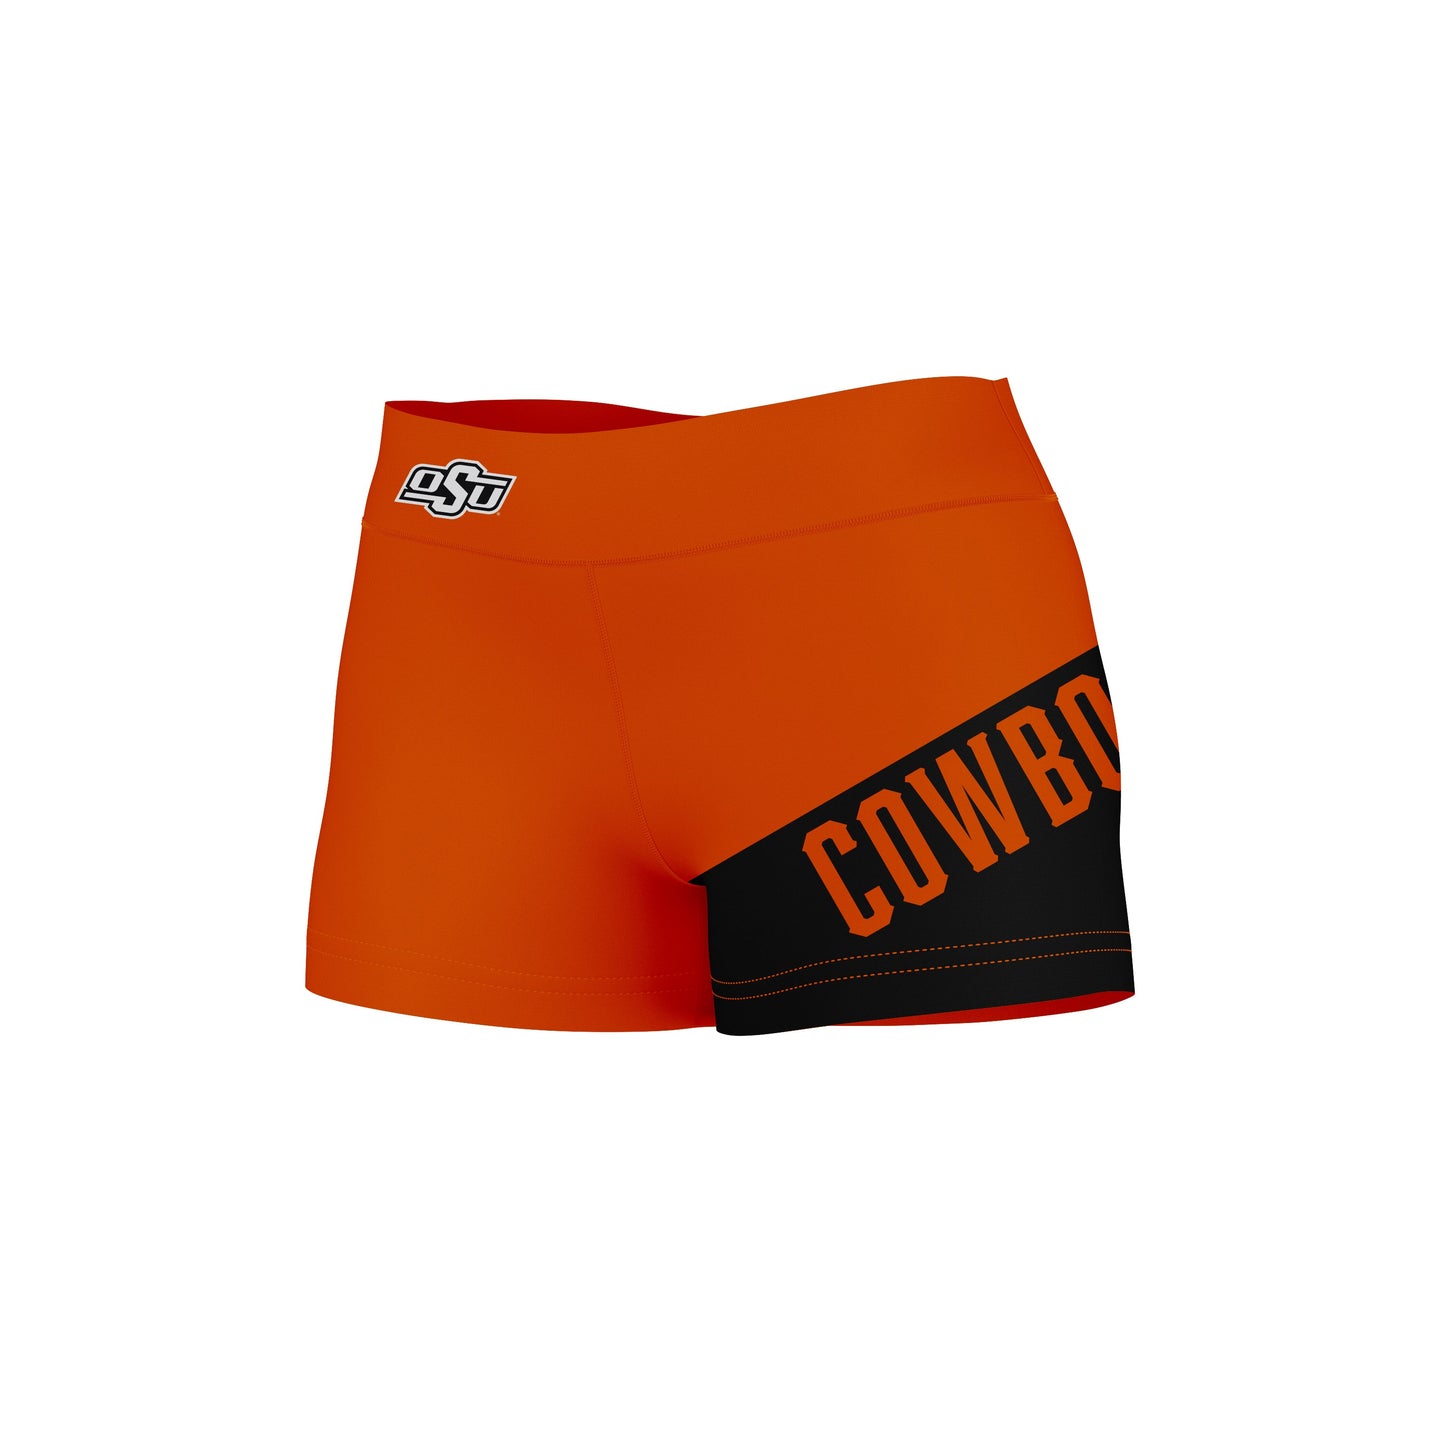 OSU Cowboys Vive La Fete Game Day Collegiate Leg Color Block Women Orange Black Optimum Yoga Short - Vive La F̻te - Online Apparel Store